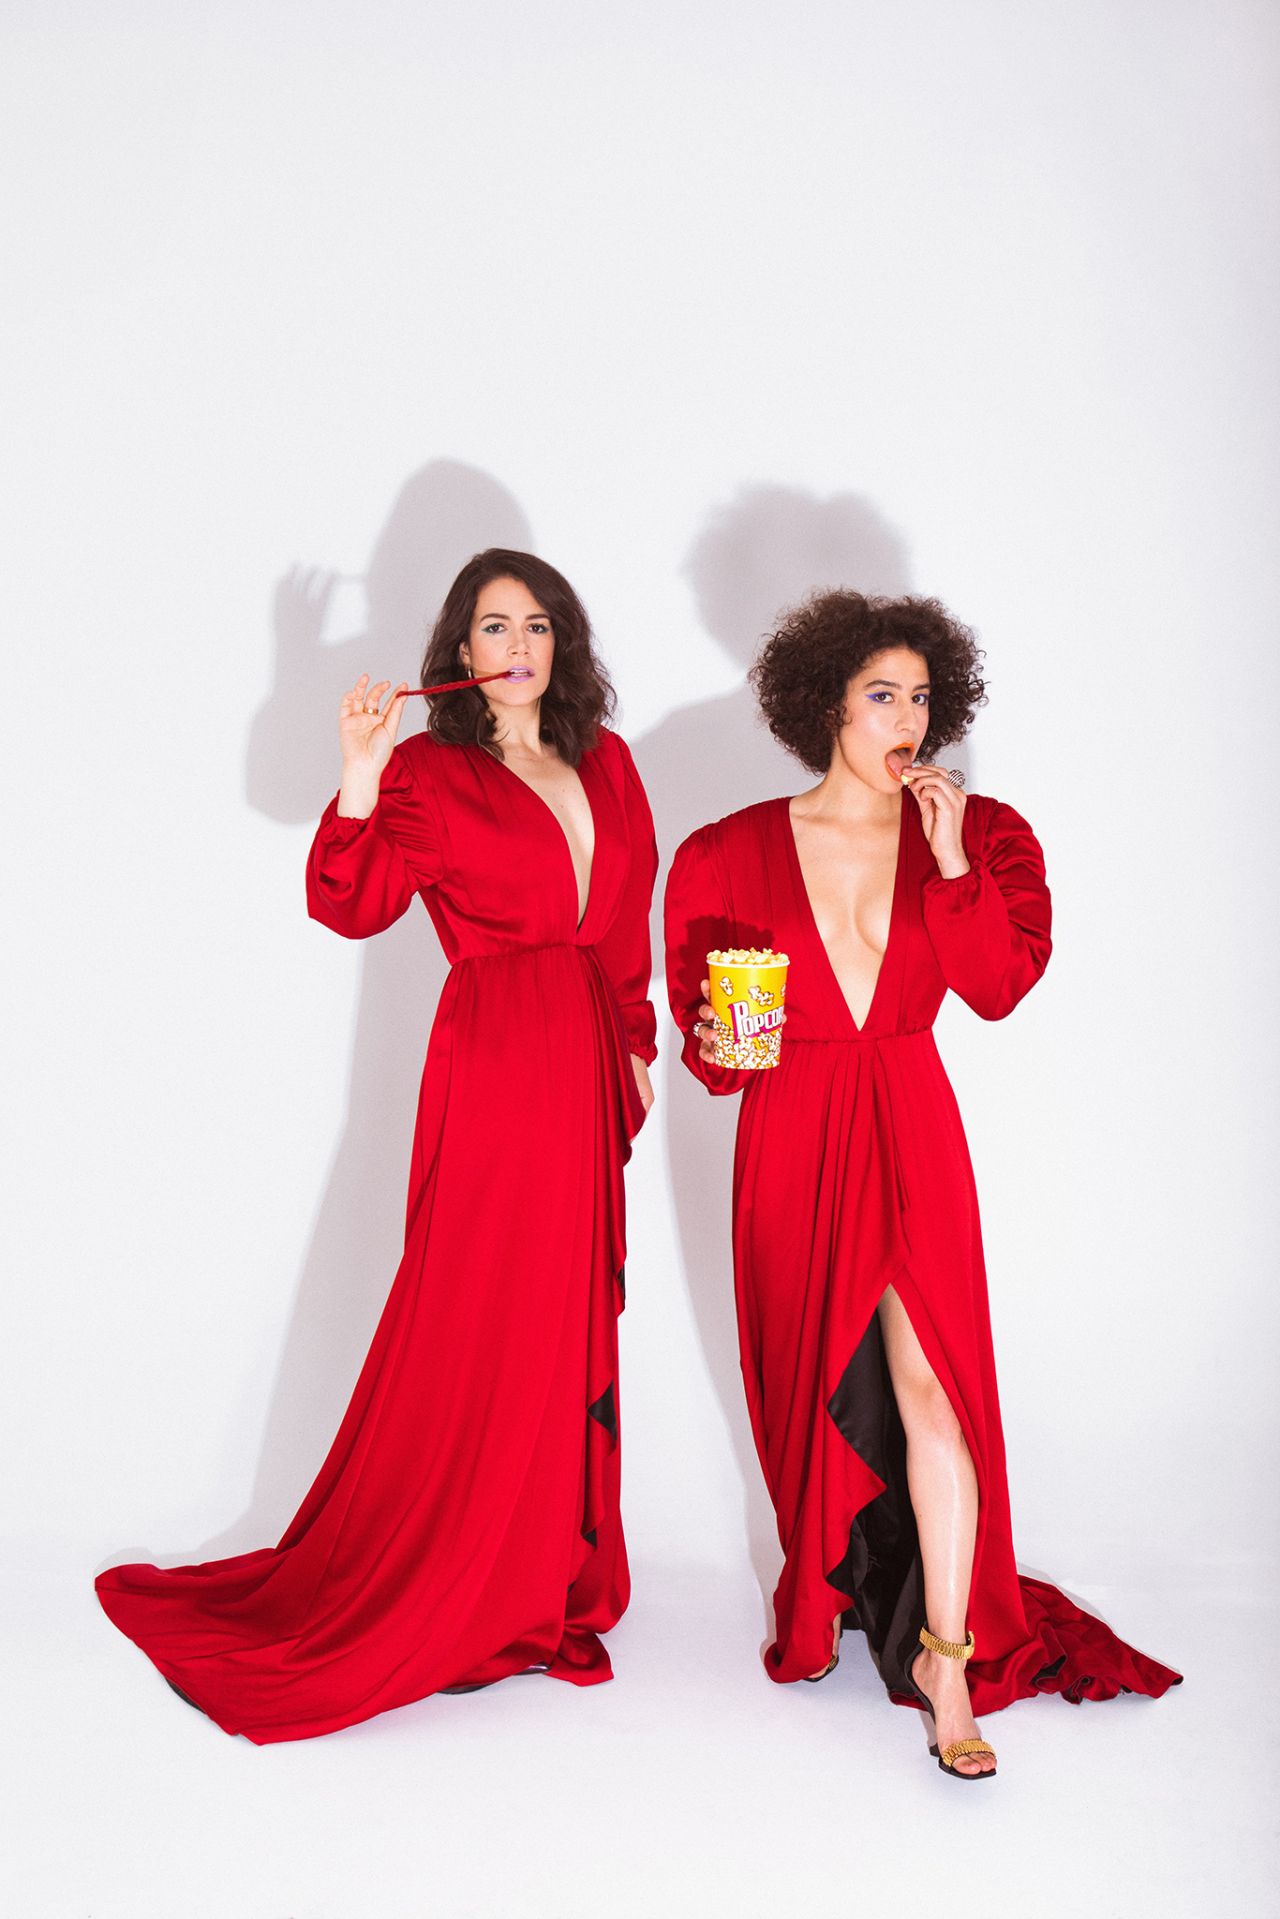 Abbi Jacobson and Ilana Glazer - Photoshoot for WWD, January 2019 • CelebMafia